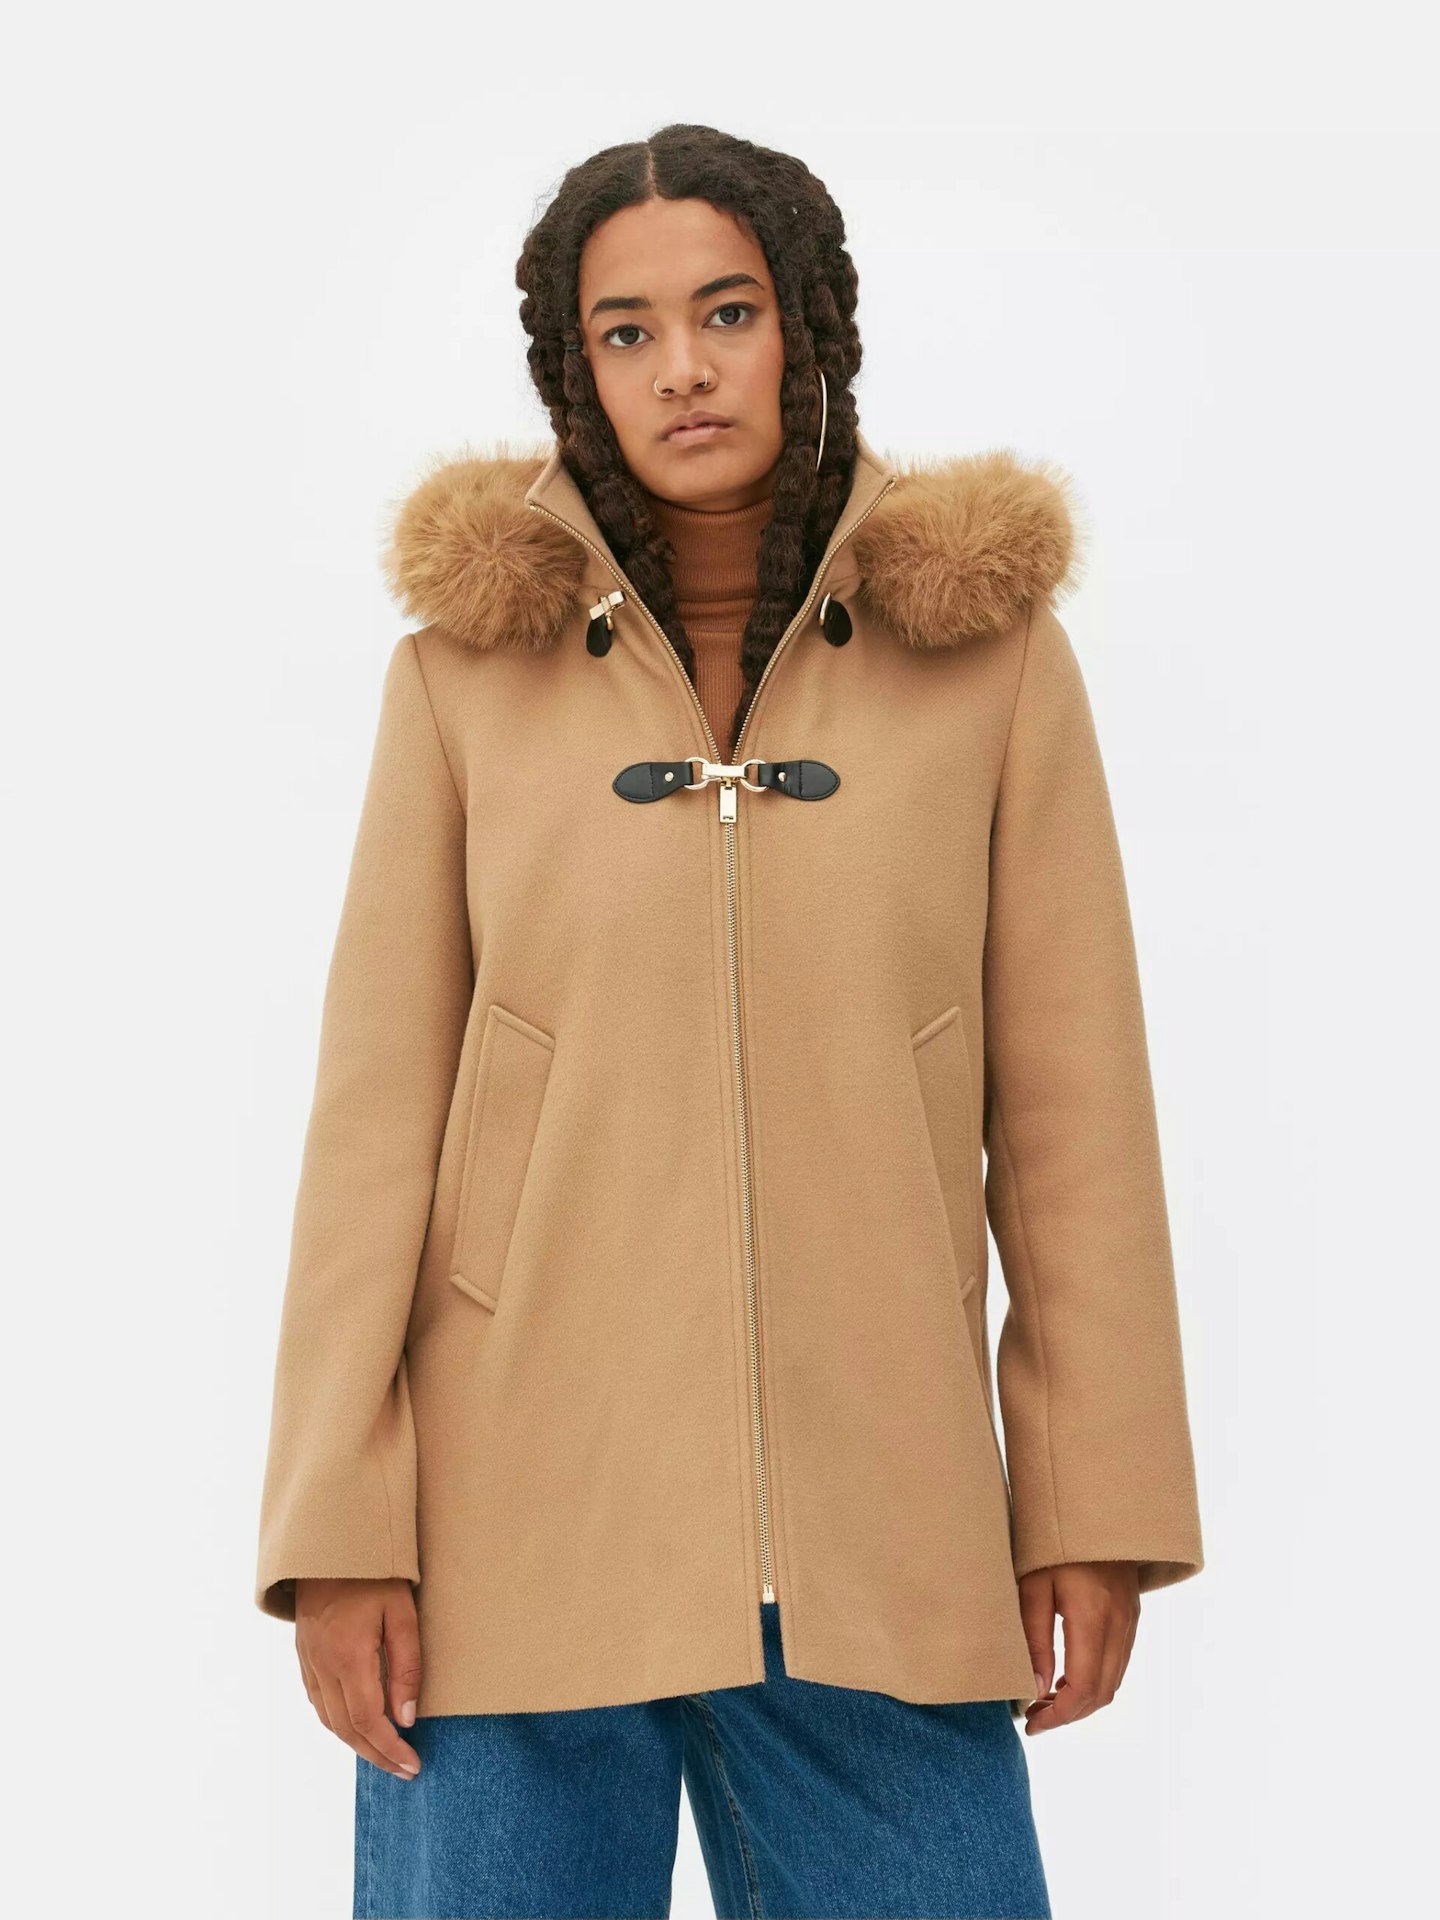 girl in camel coat 